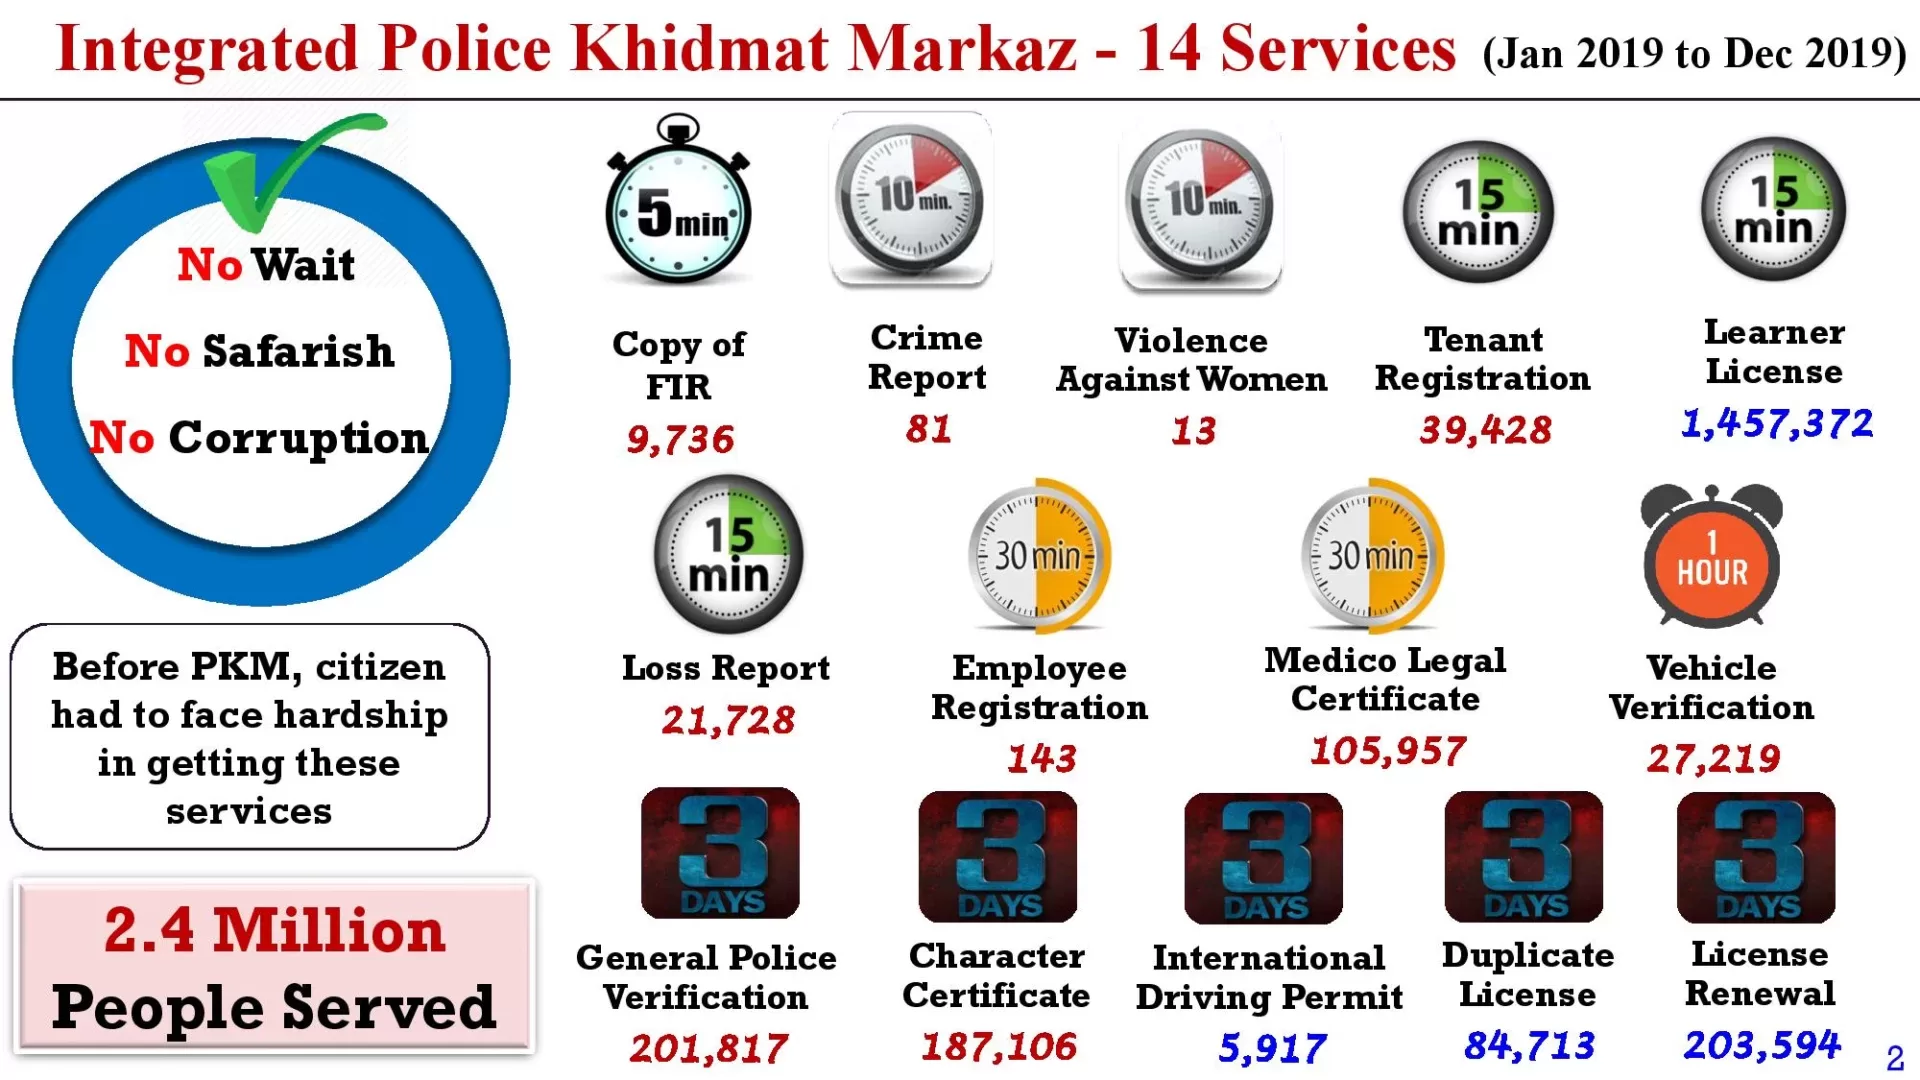 Police Khidmat Markaz Stats Till 15-10-2020